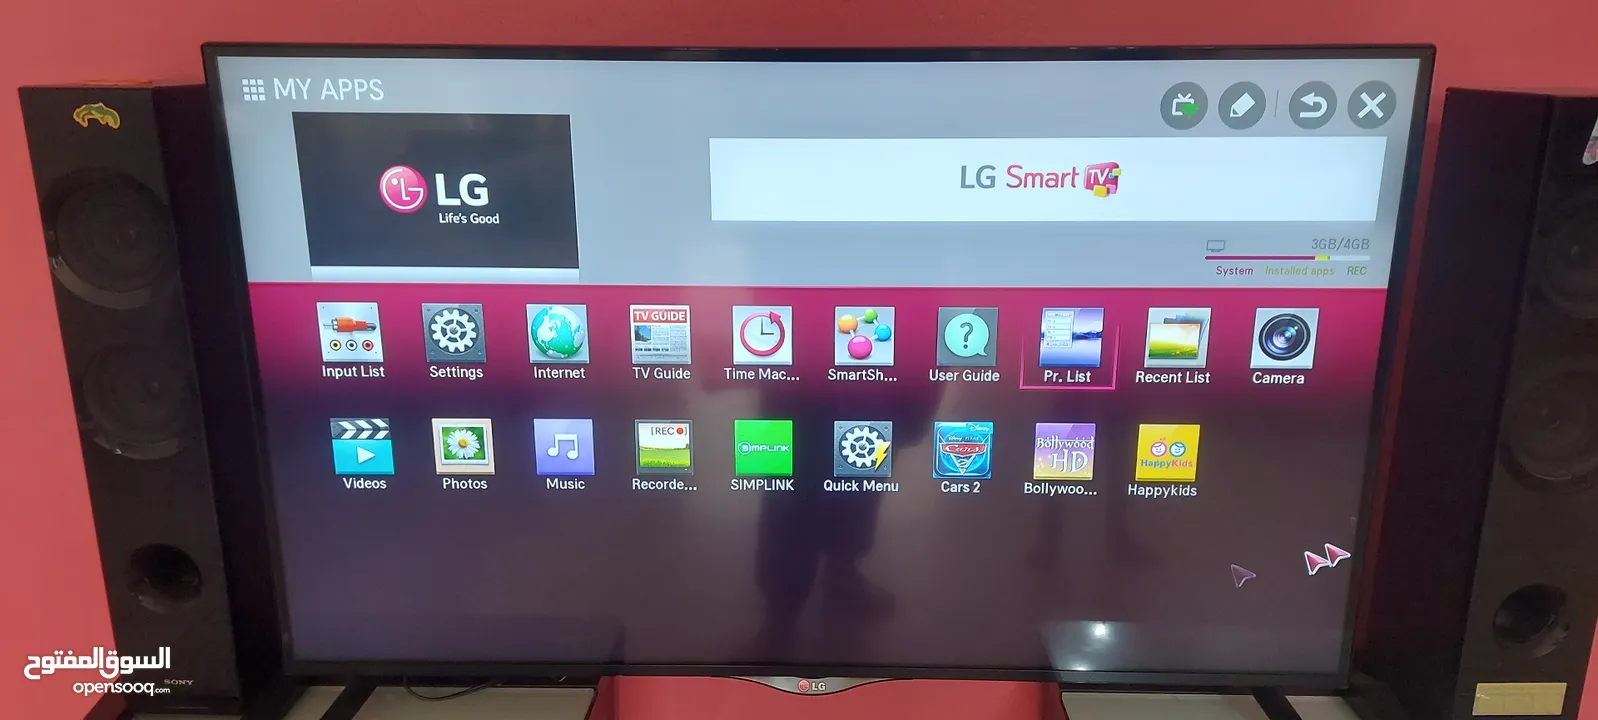 LG 42 inch Smart LED TV